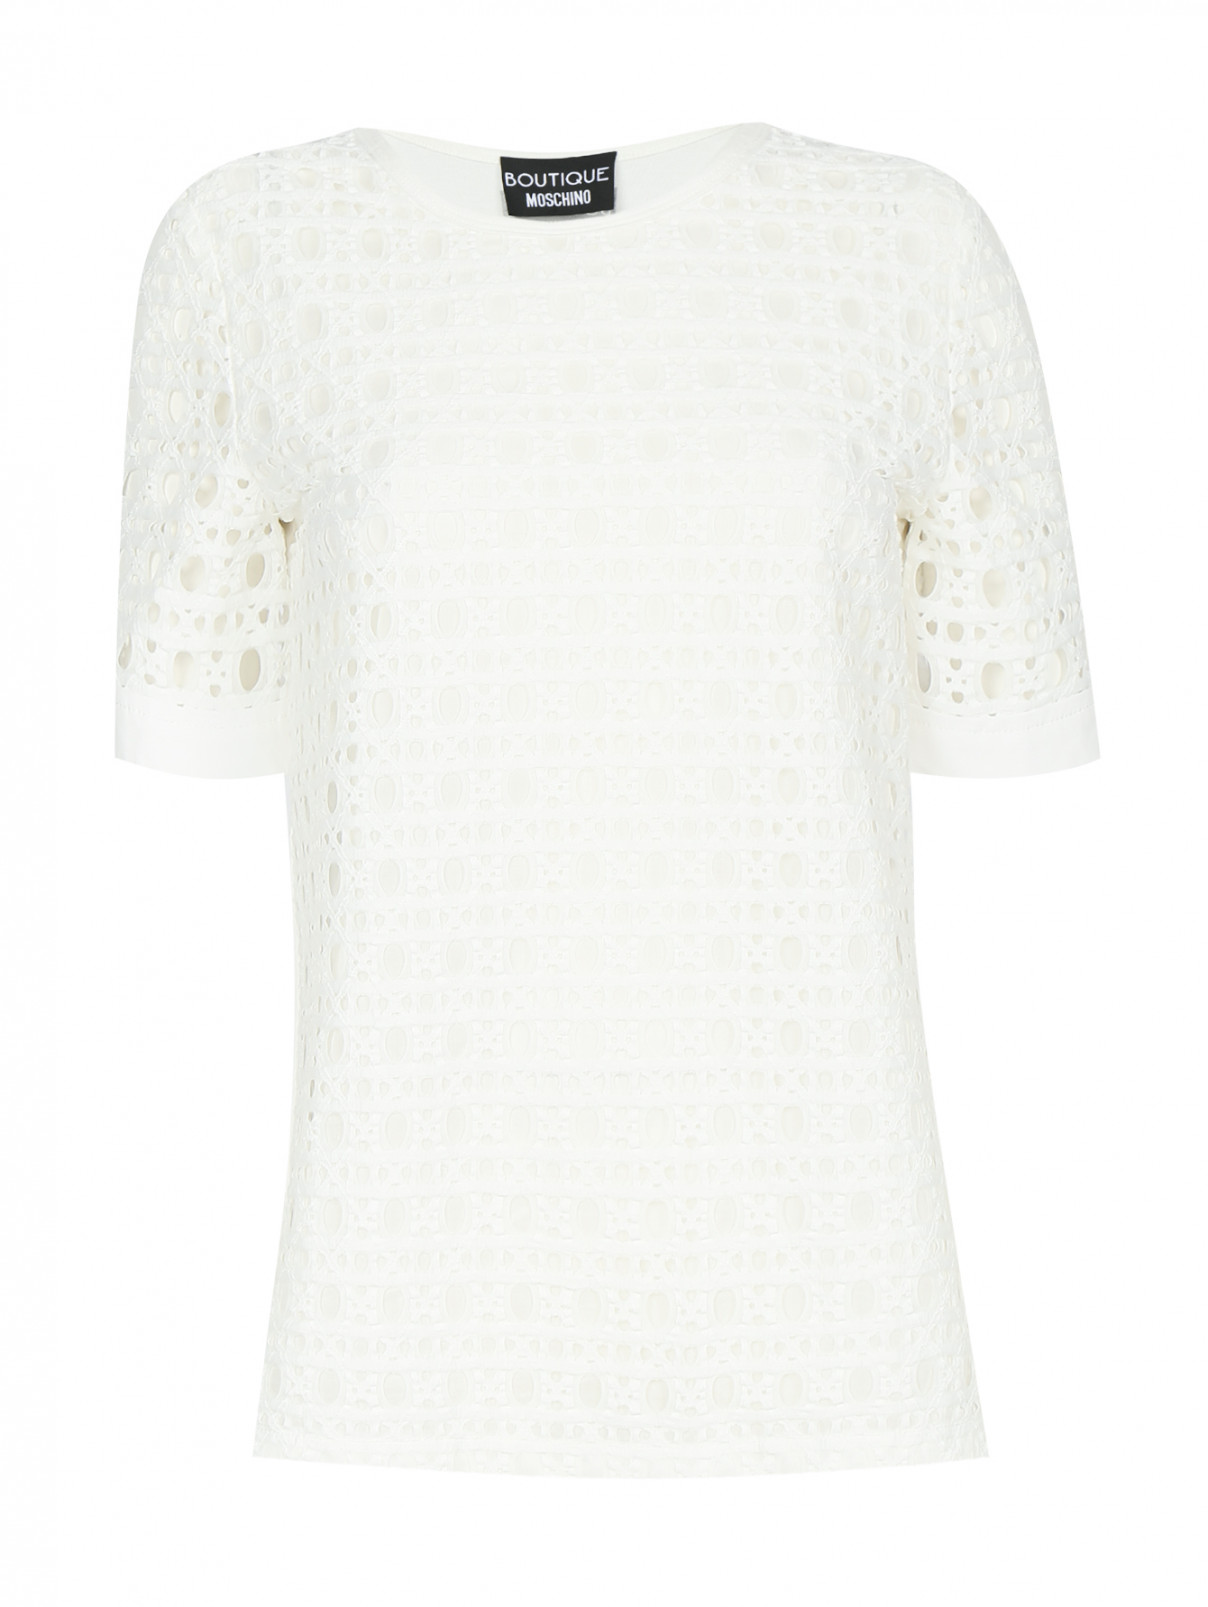 Блуза с короткими рукавами Moschino Boutique  –  Общий вид  – Цвет:  Белый